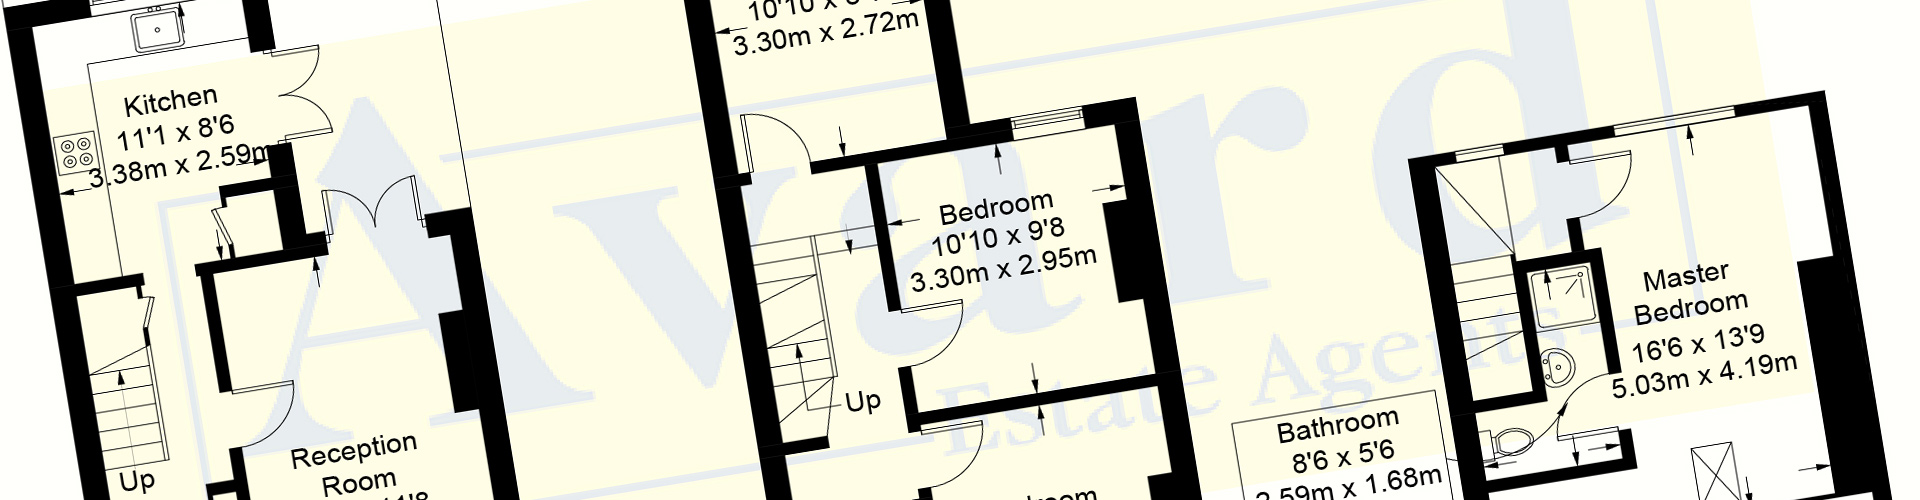 property floor plans